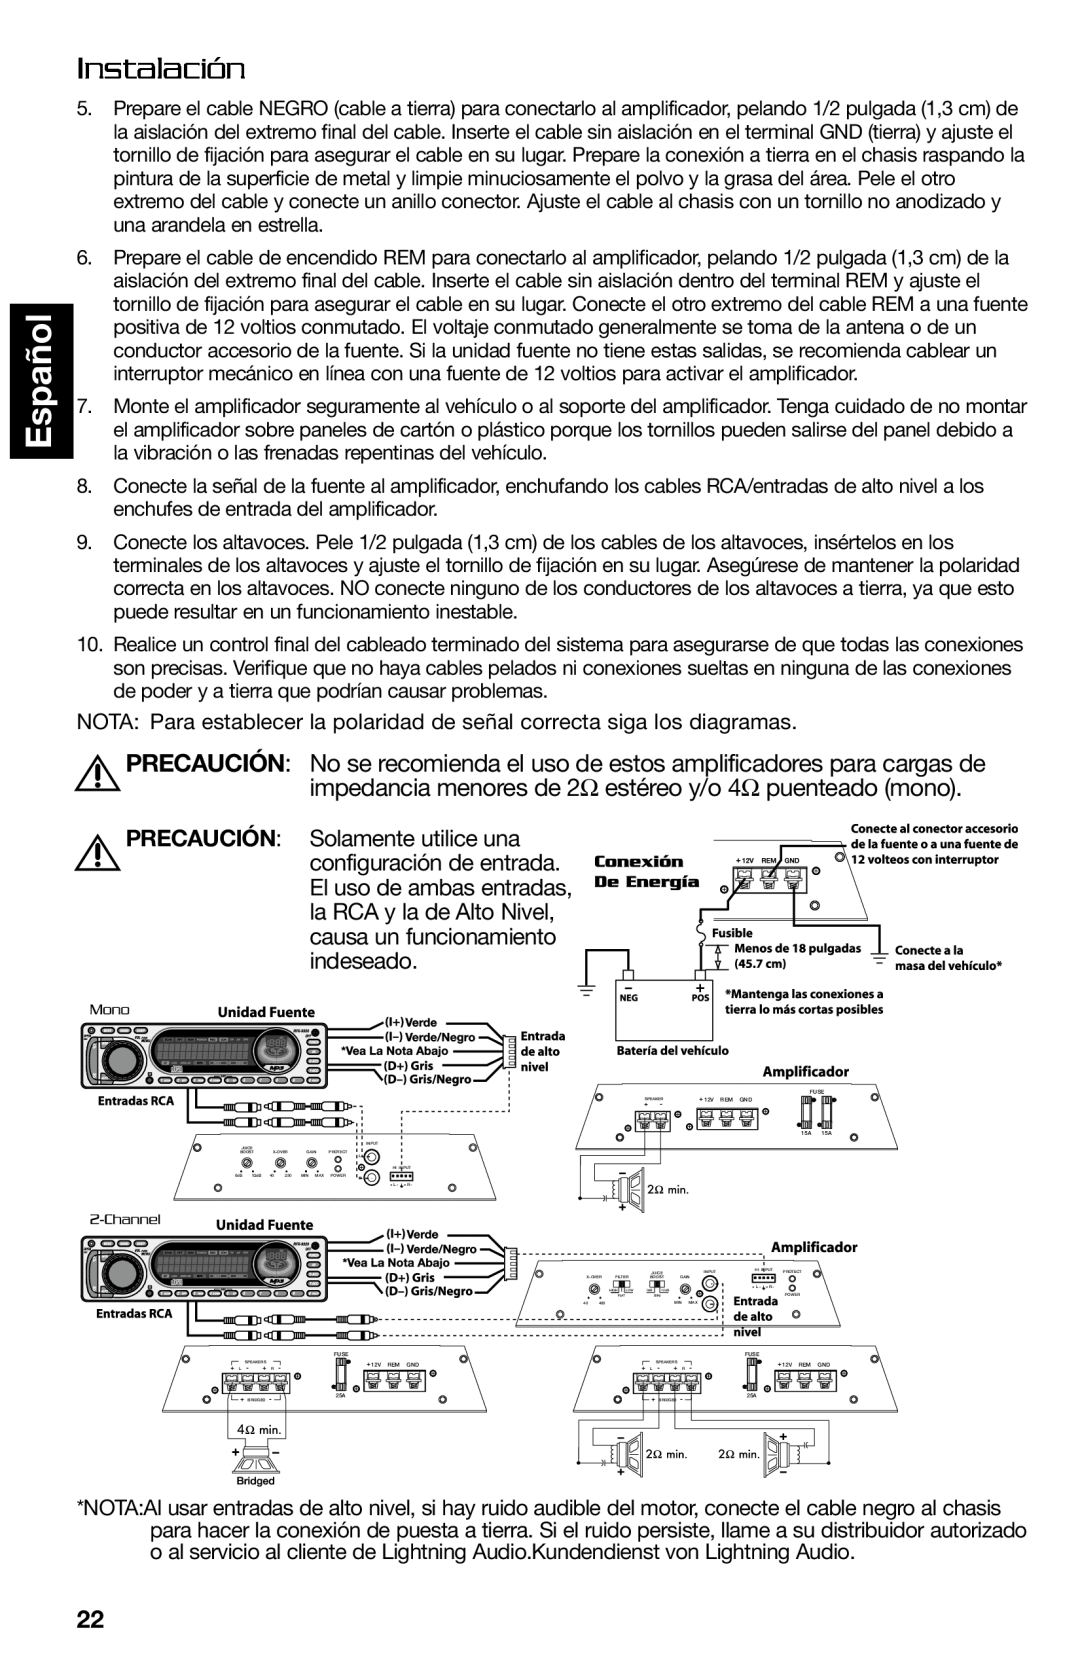 Lightning Audio FF250.1 manual Español, Instalación, PRECAUCIÓN Solamente utilice una, configuración de entrada, indeseado 